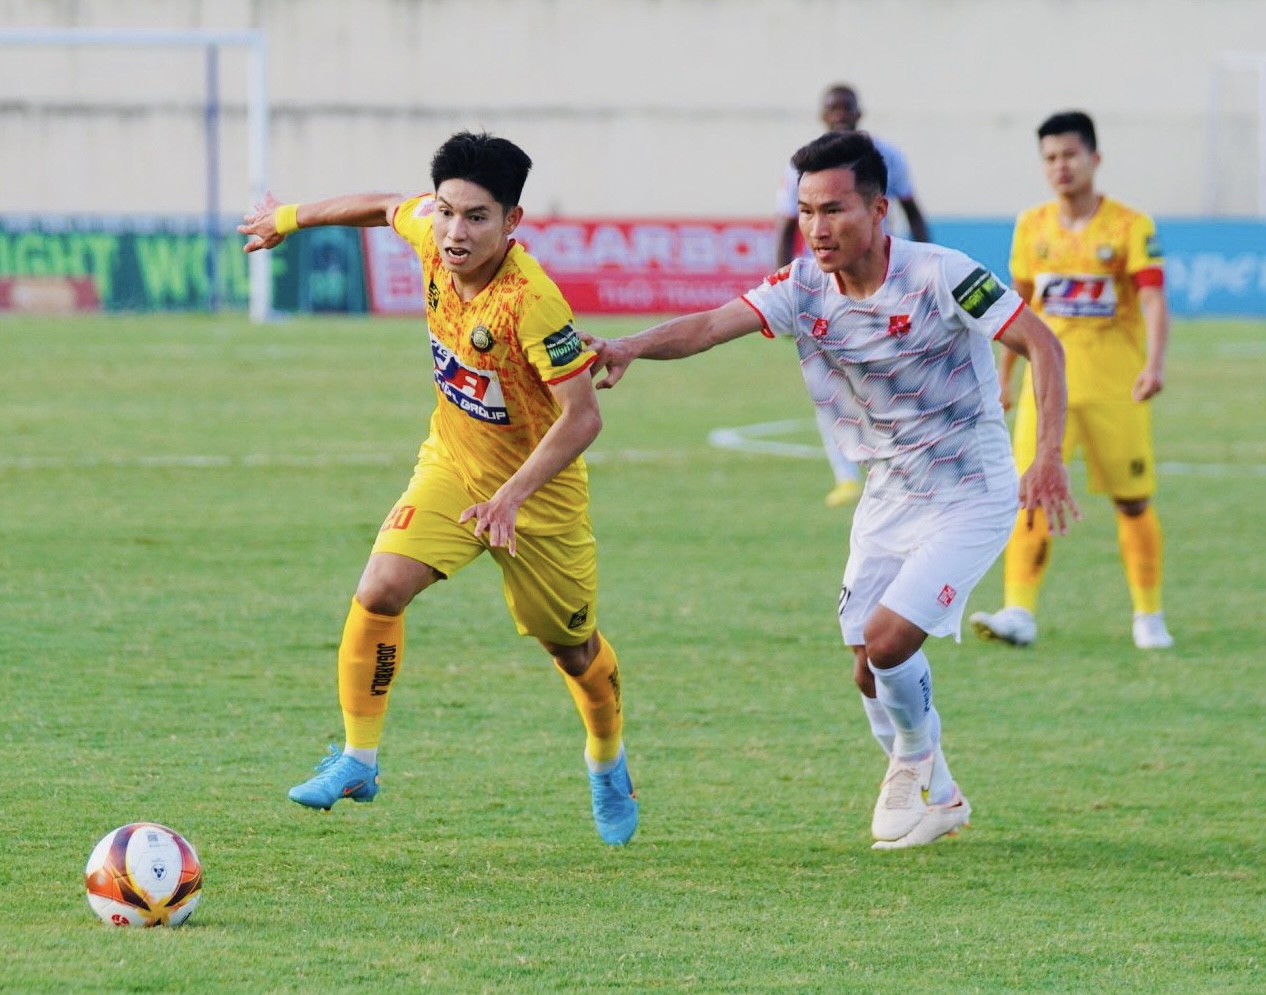 Câu lạc bộ Thanh Hoá gặp nhiều khó khăn trước Hải Phòng dù thi đấu trên sân nhà. Ảnh: Hoàng Công